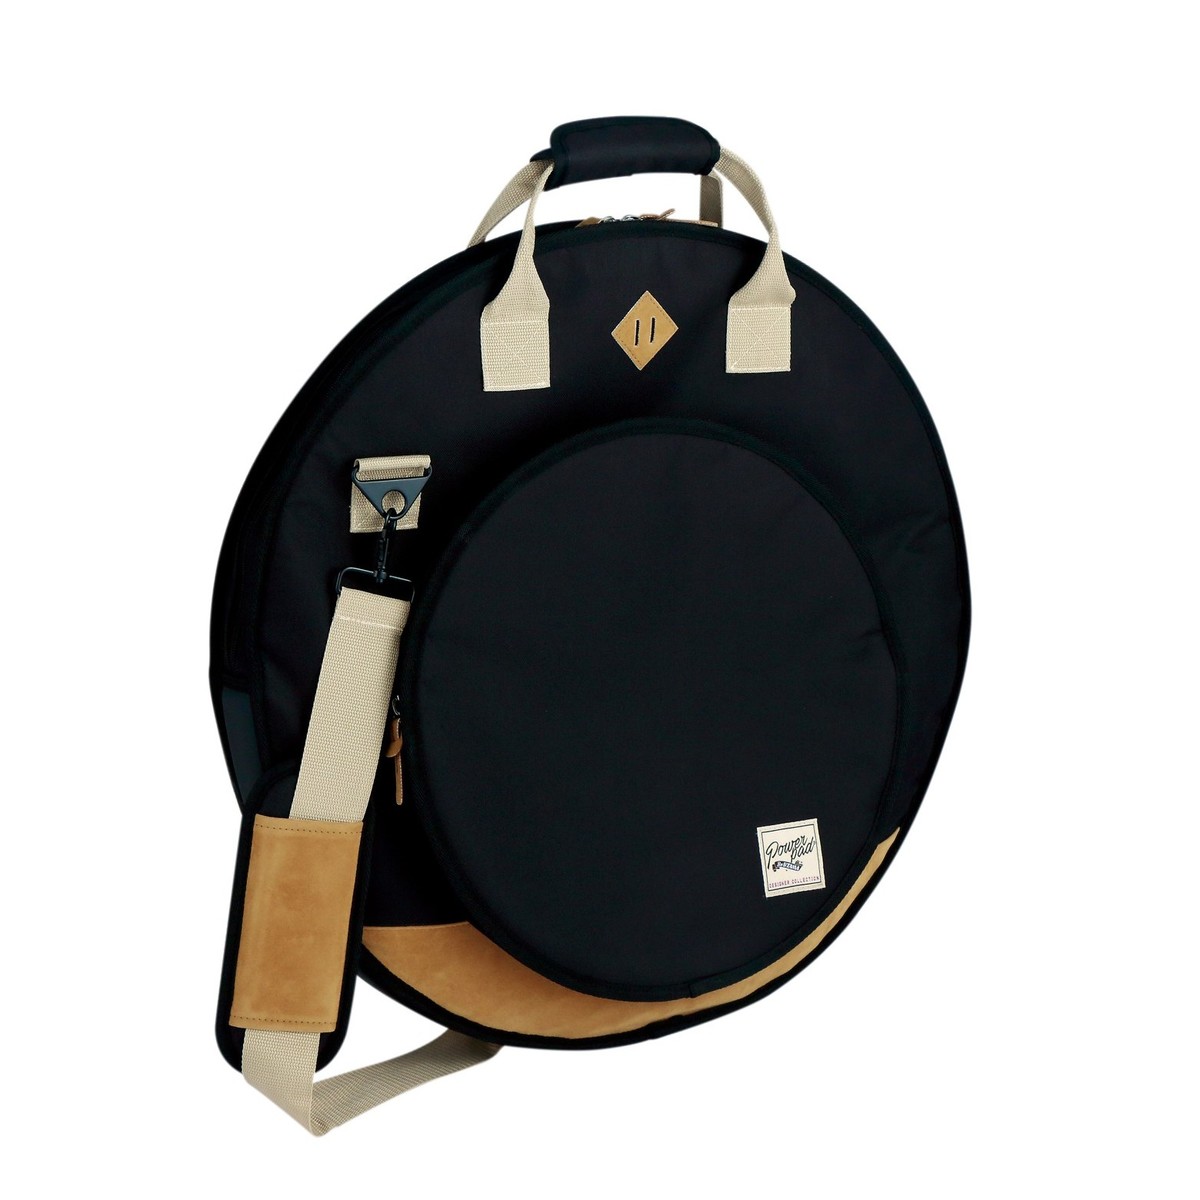 Tama TCB22BK 22" Powerpad Designer Cymbal Bag